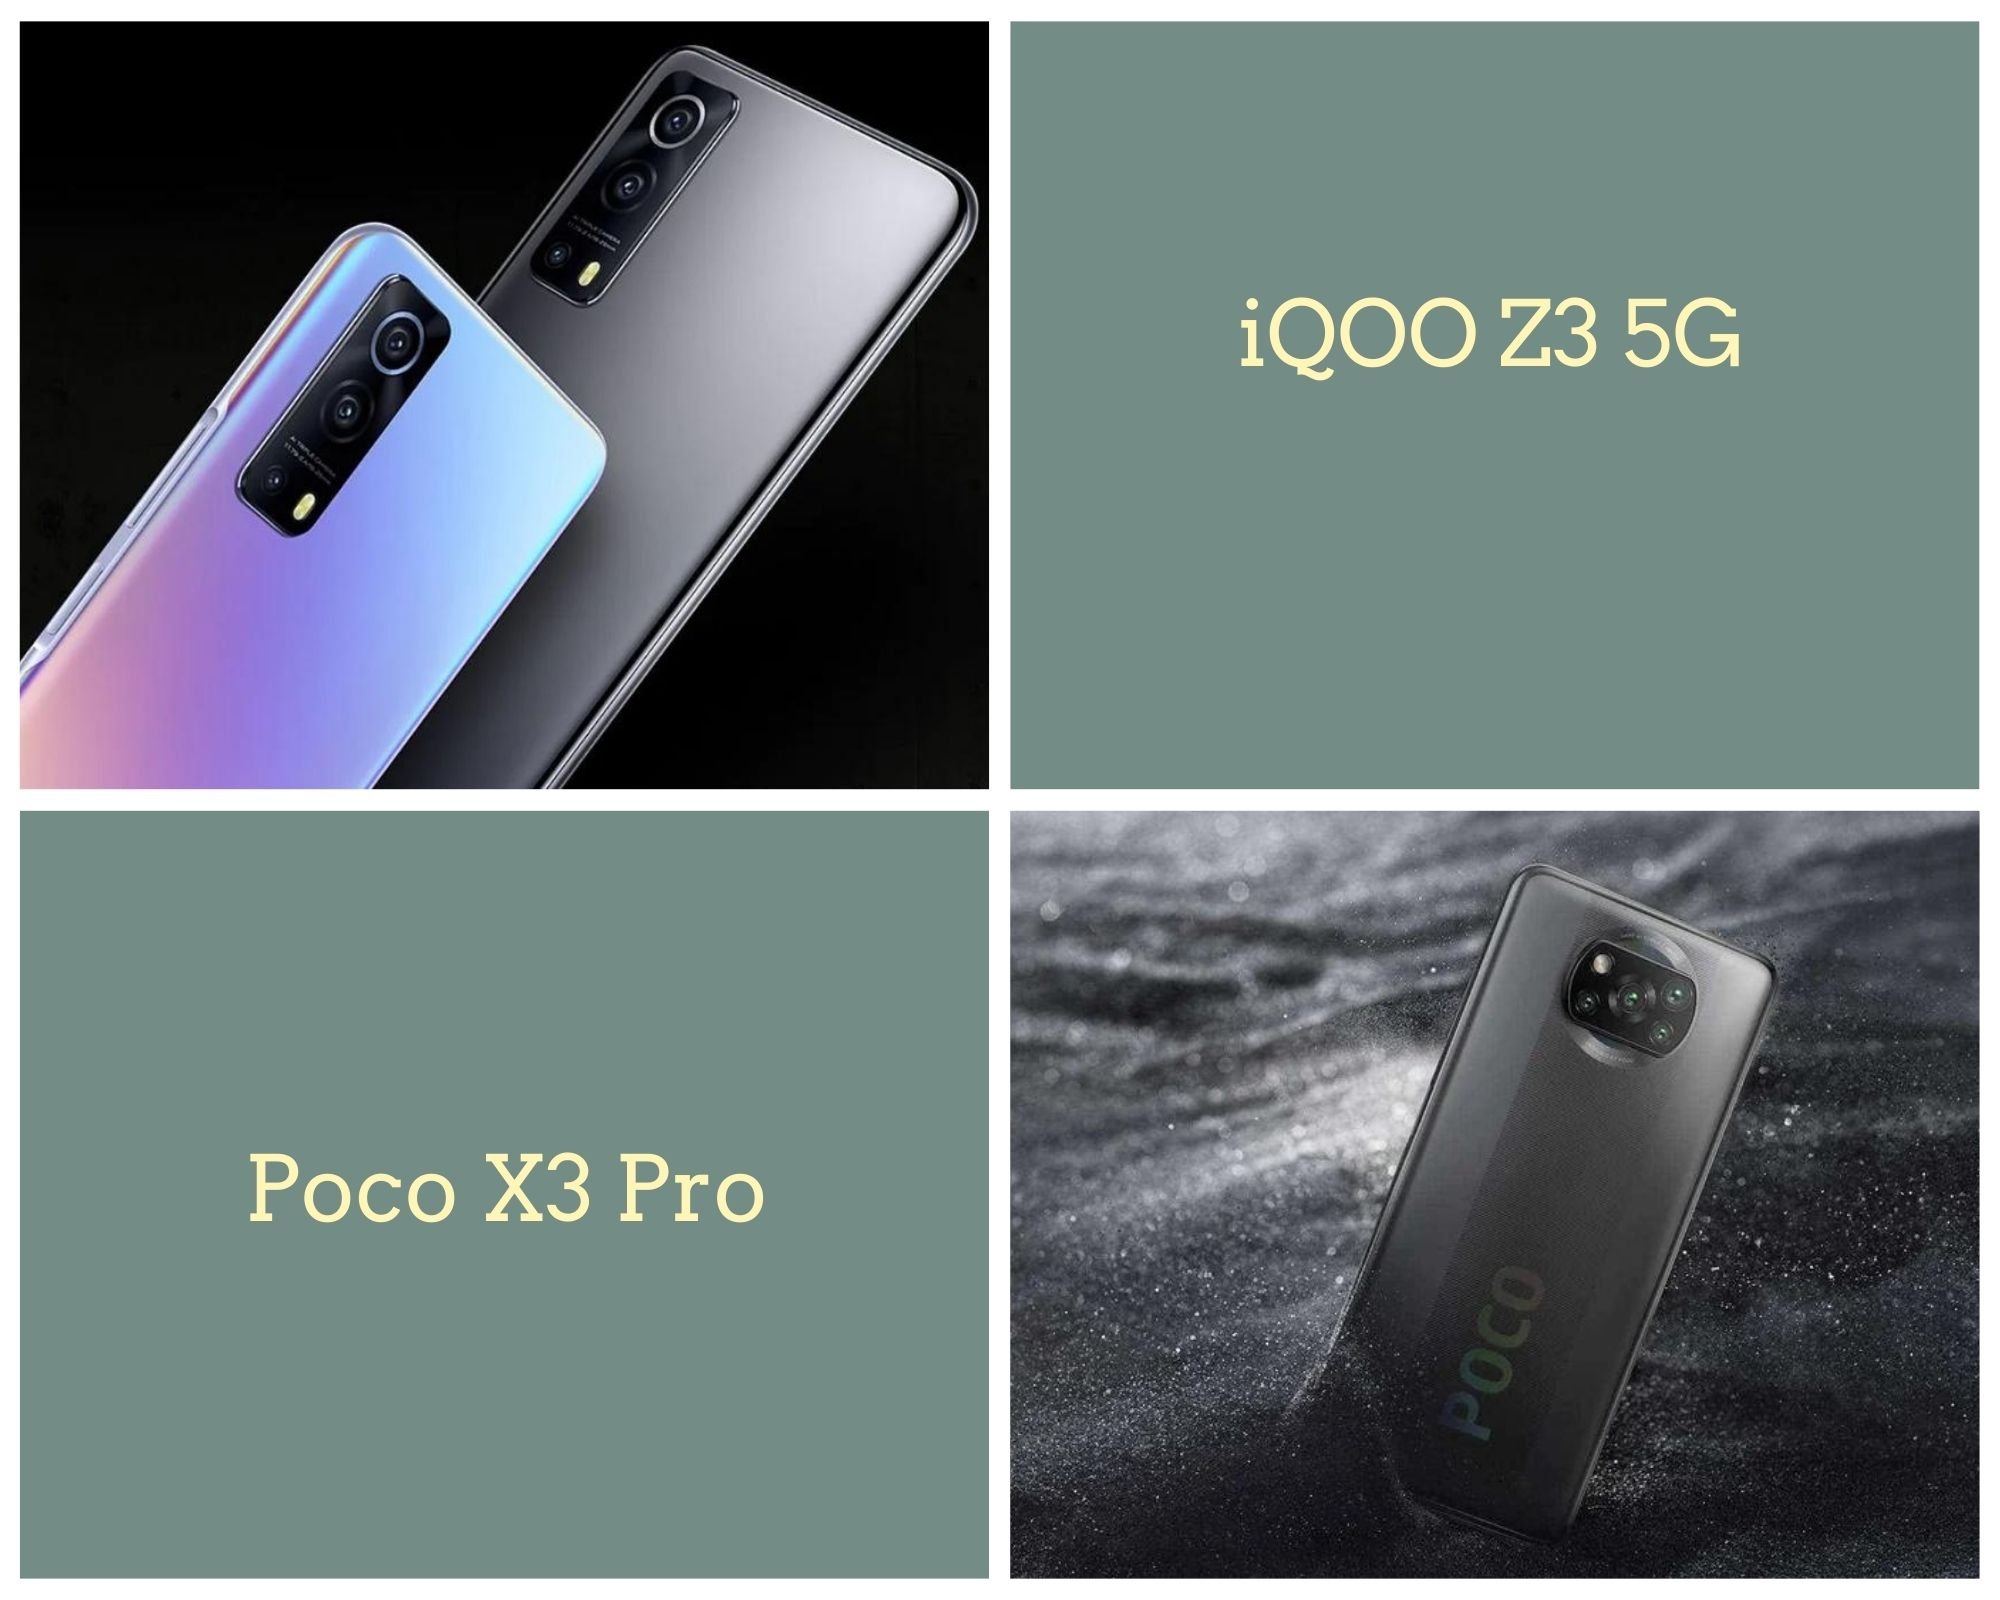 iQOO Z3 5G Vs Poco X3 Pro: Price, Specifications, And Design Compared